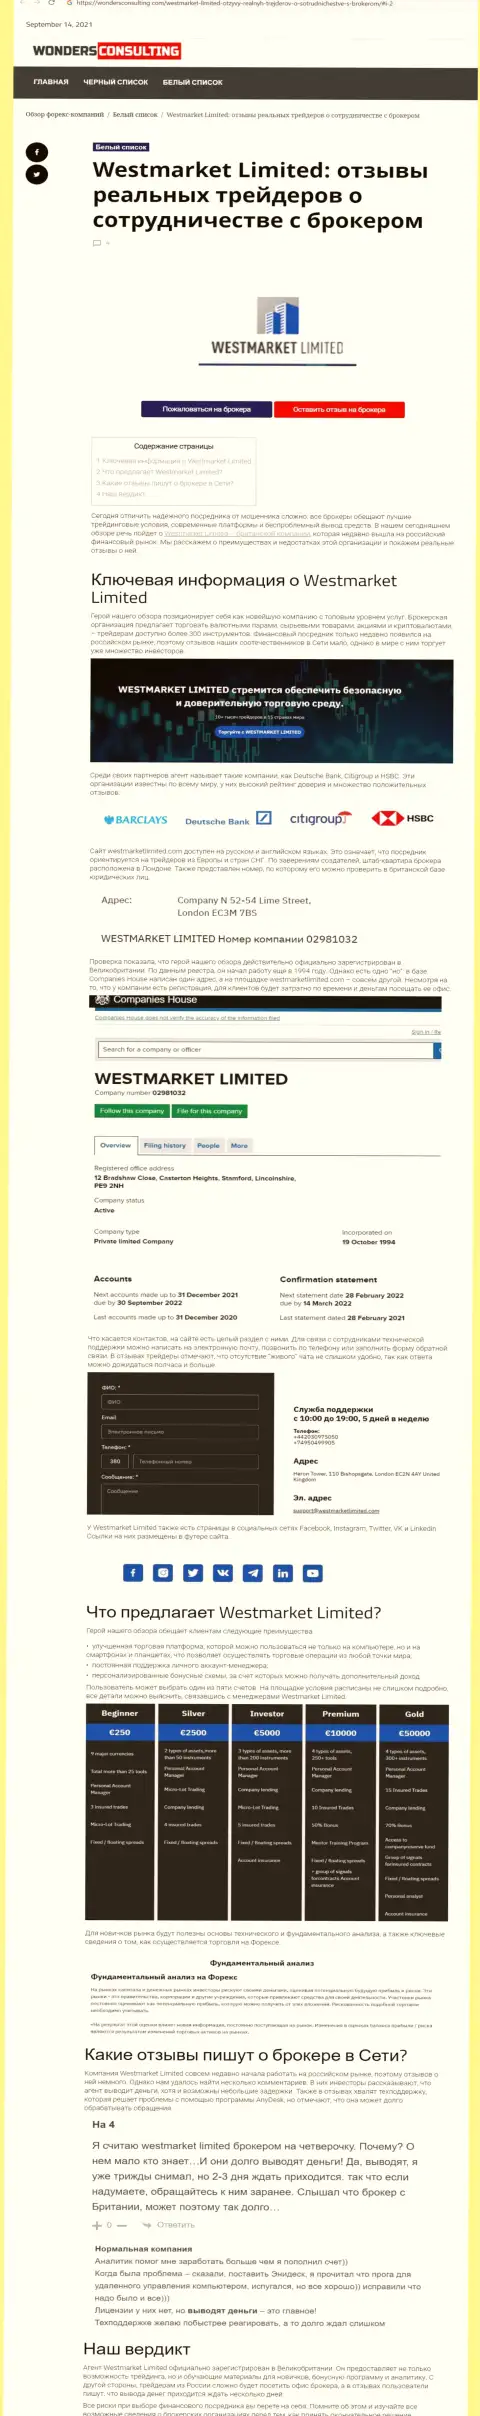 Обзорный материал об Форекс дилере ВестМаркет Лимитед на сайте вондерконсалтинг ком